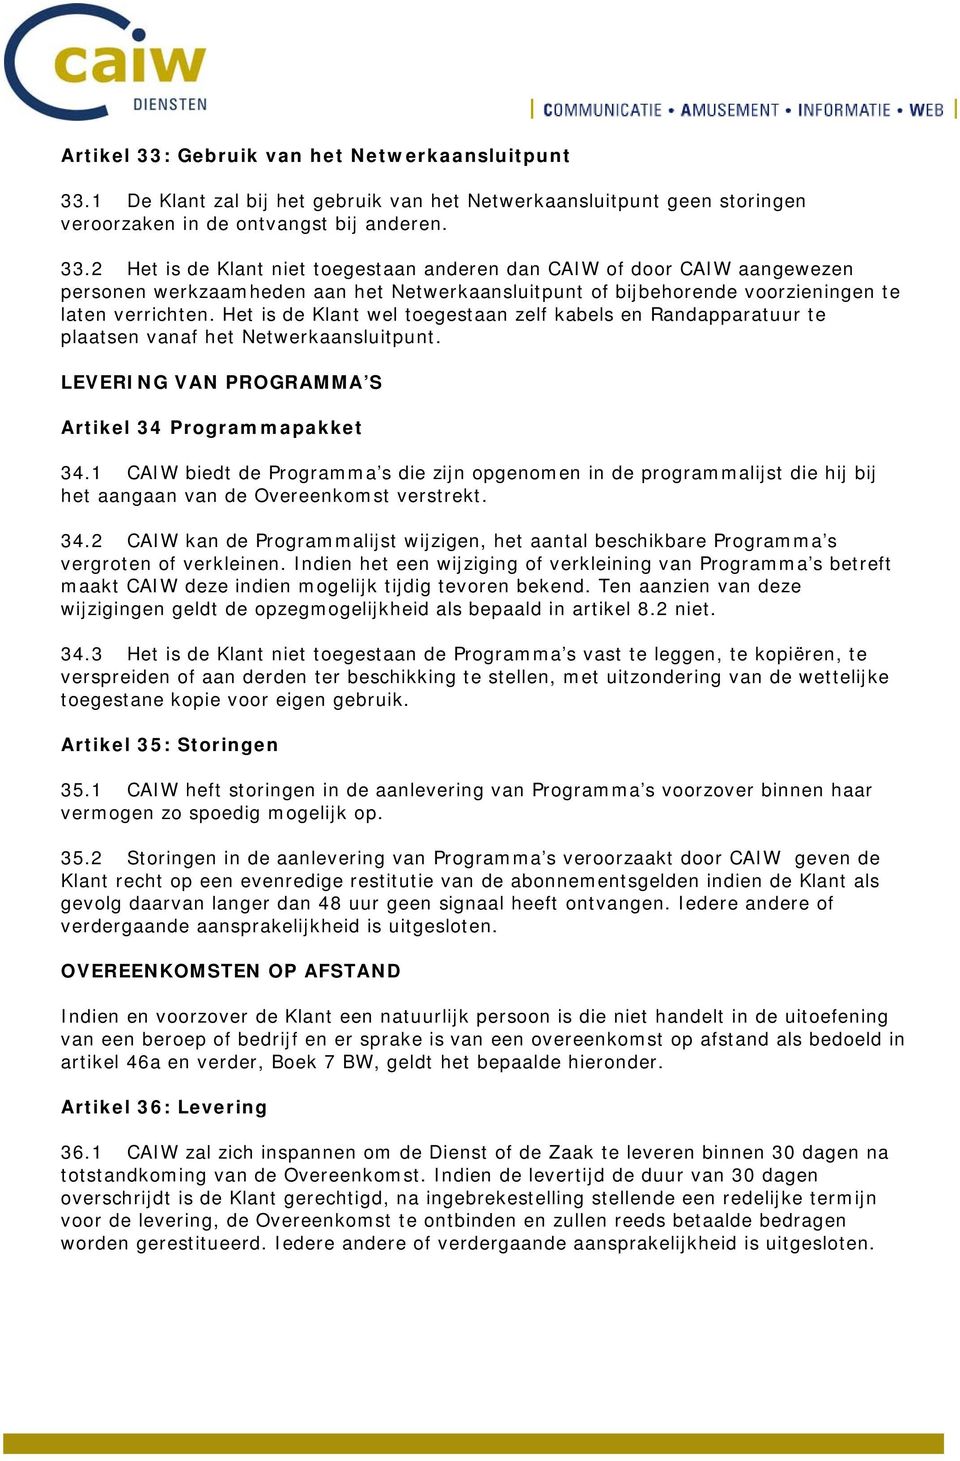 1 CAIW biedt de Programma s die zijn opgenomen in de programmalijst die hij bij het aangaan van de Overeenkomst verstrekt. 34.